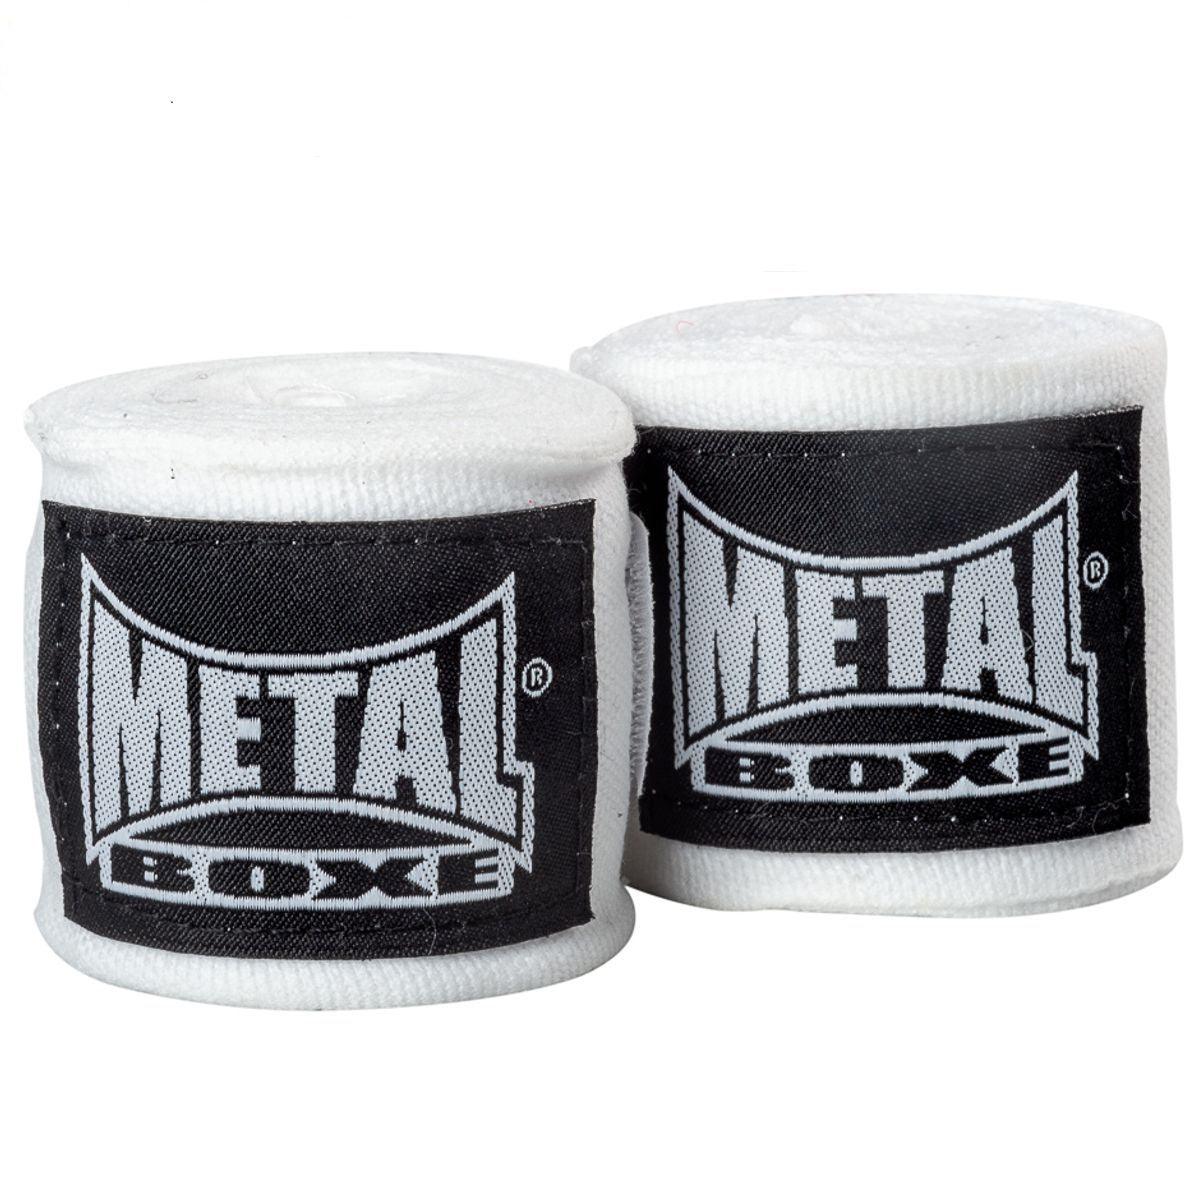 Bande Metal Boxe Bande de boxe Métal boxe-250 cm-Bande Blanche